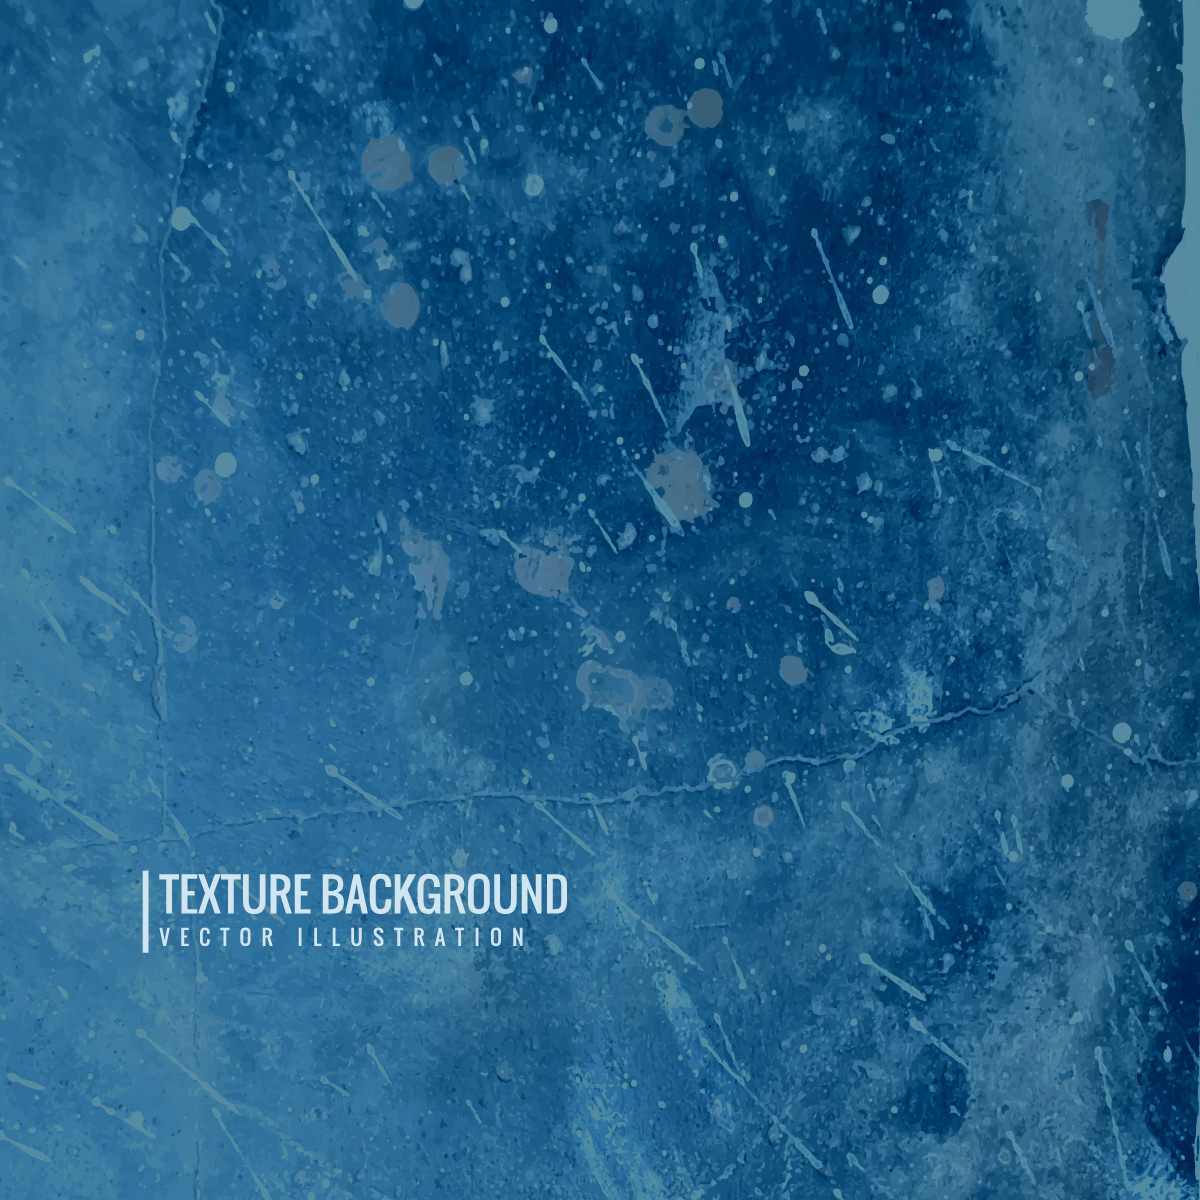 Free Vector Blue Textured Grunge Background